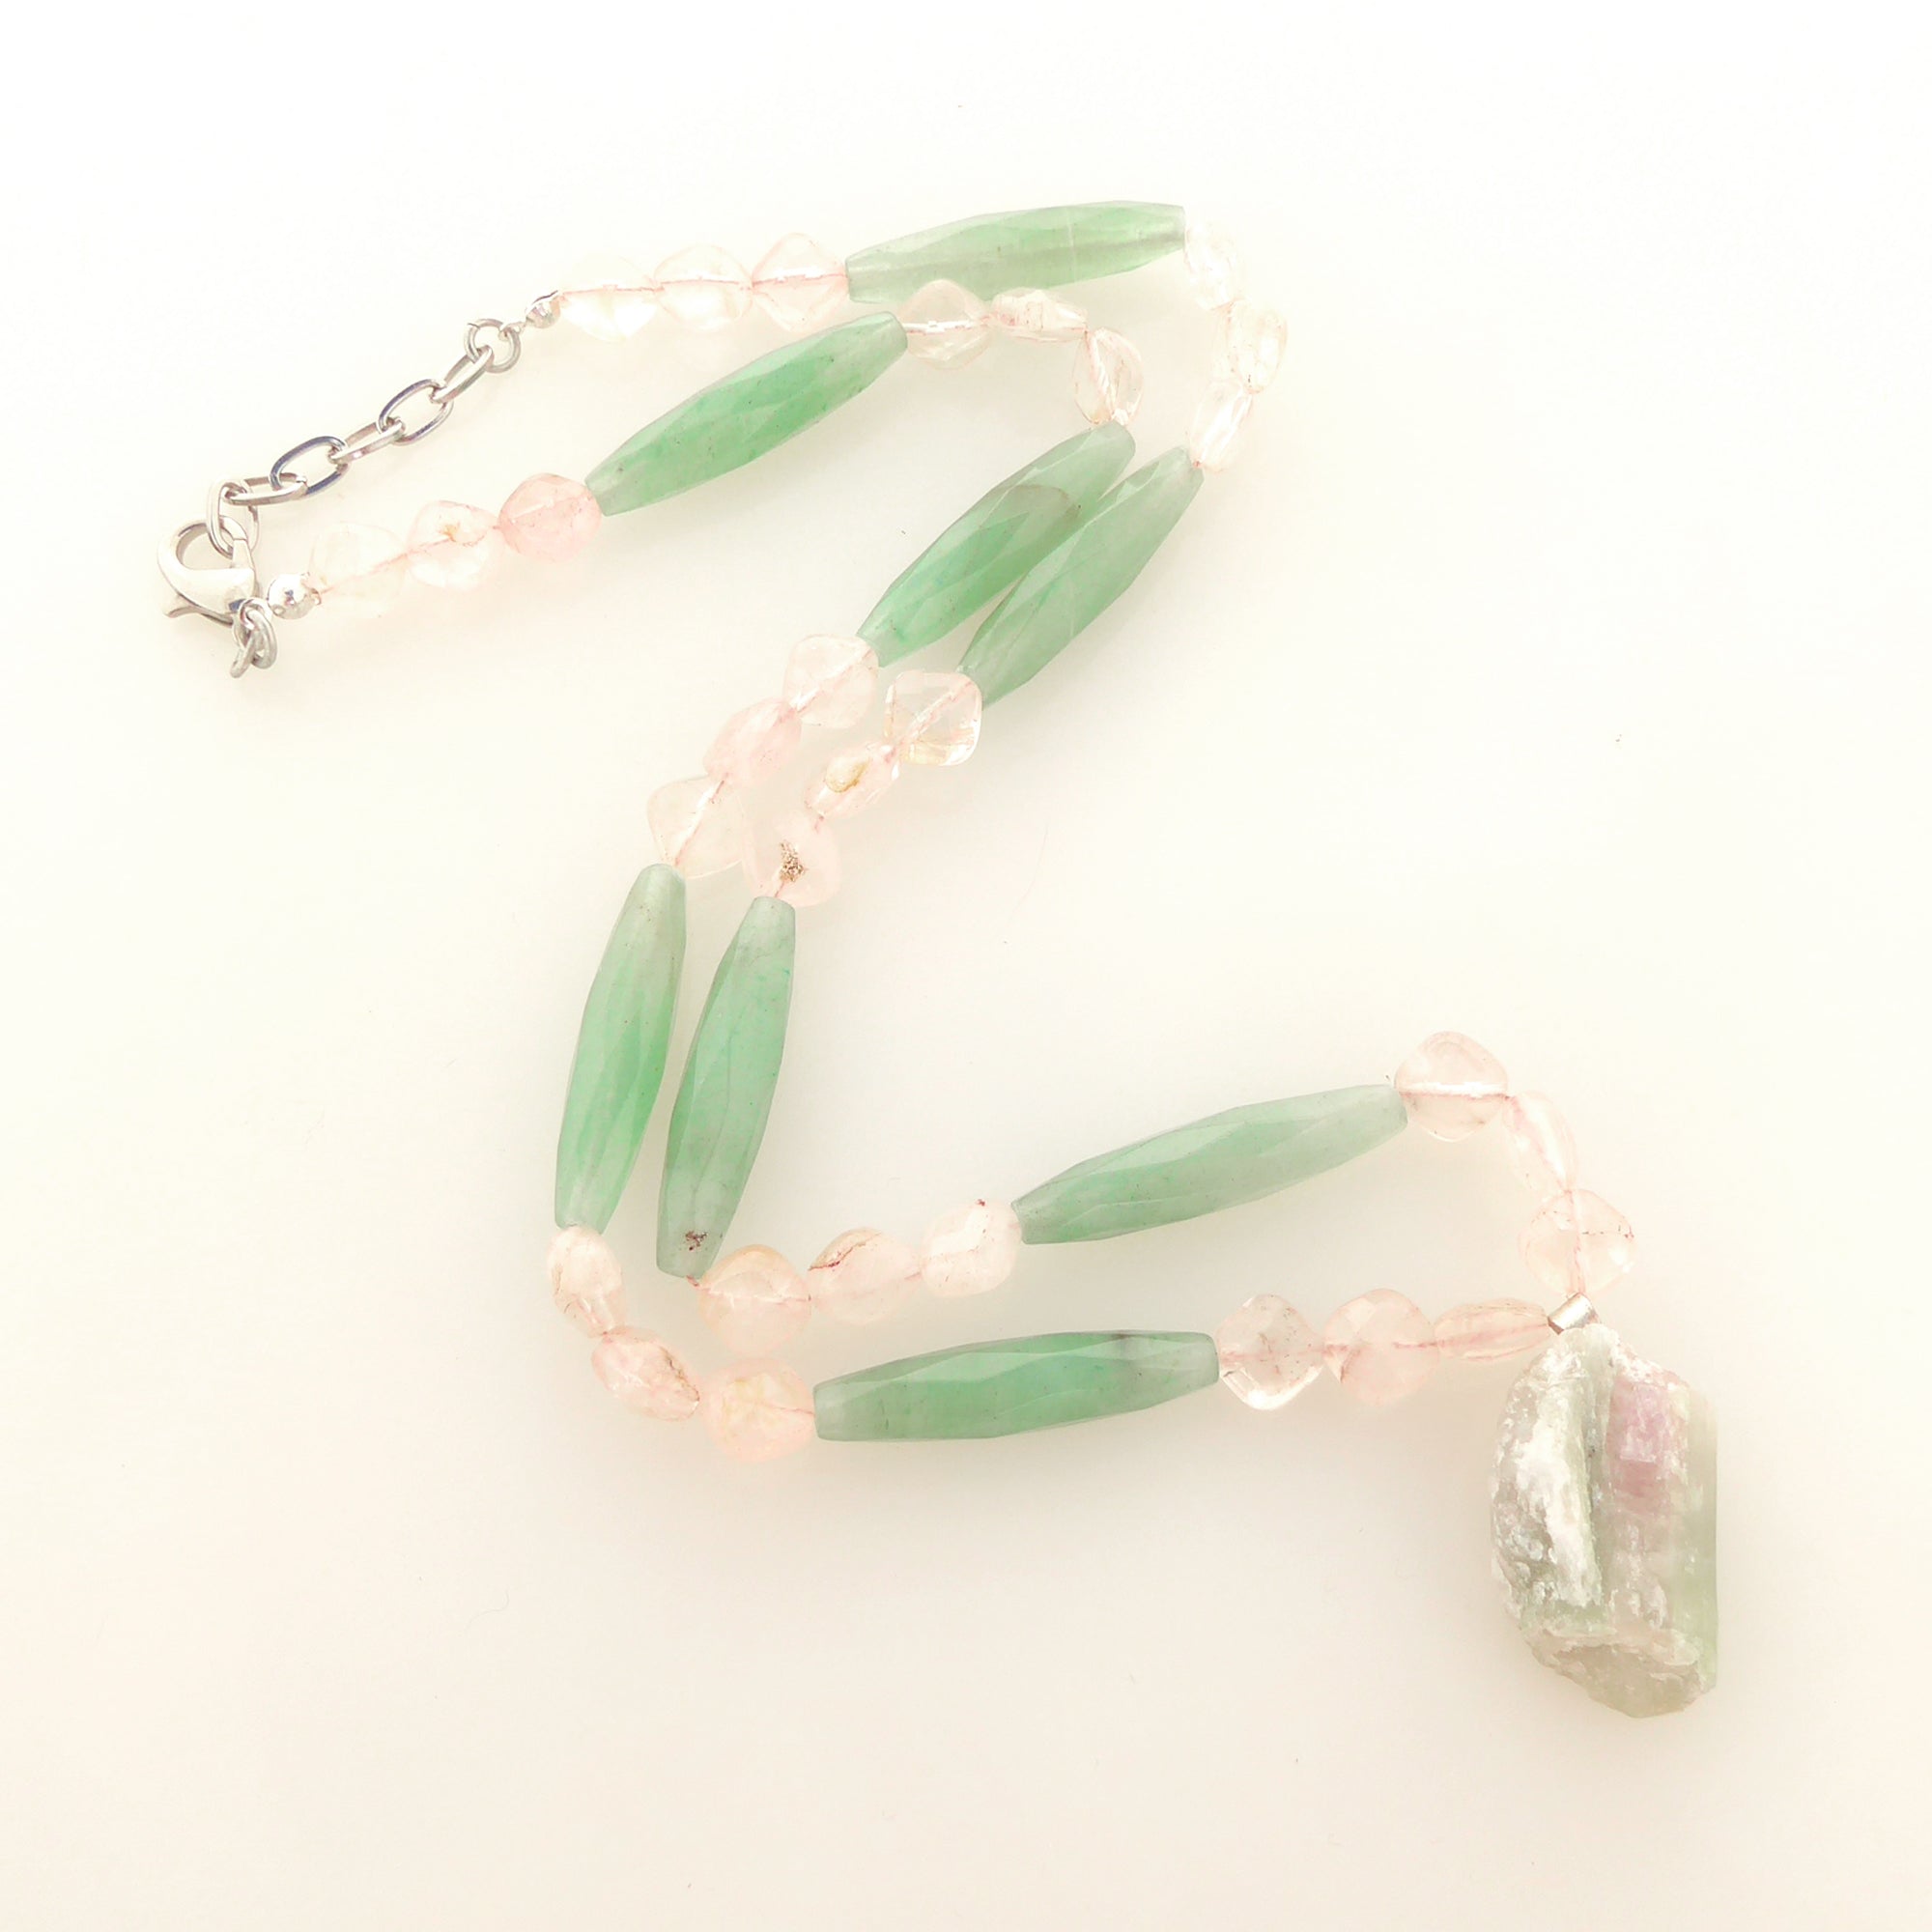 Watermelon tourmaline rose quartz green aventurine necklace by Jenny Dayco 5